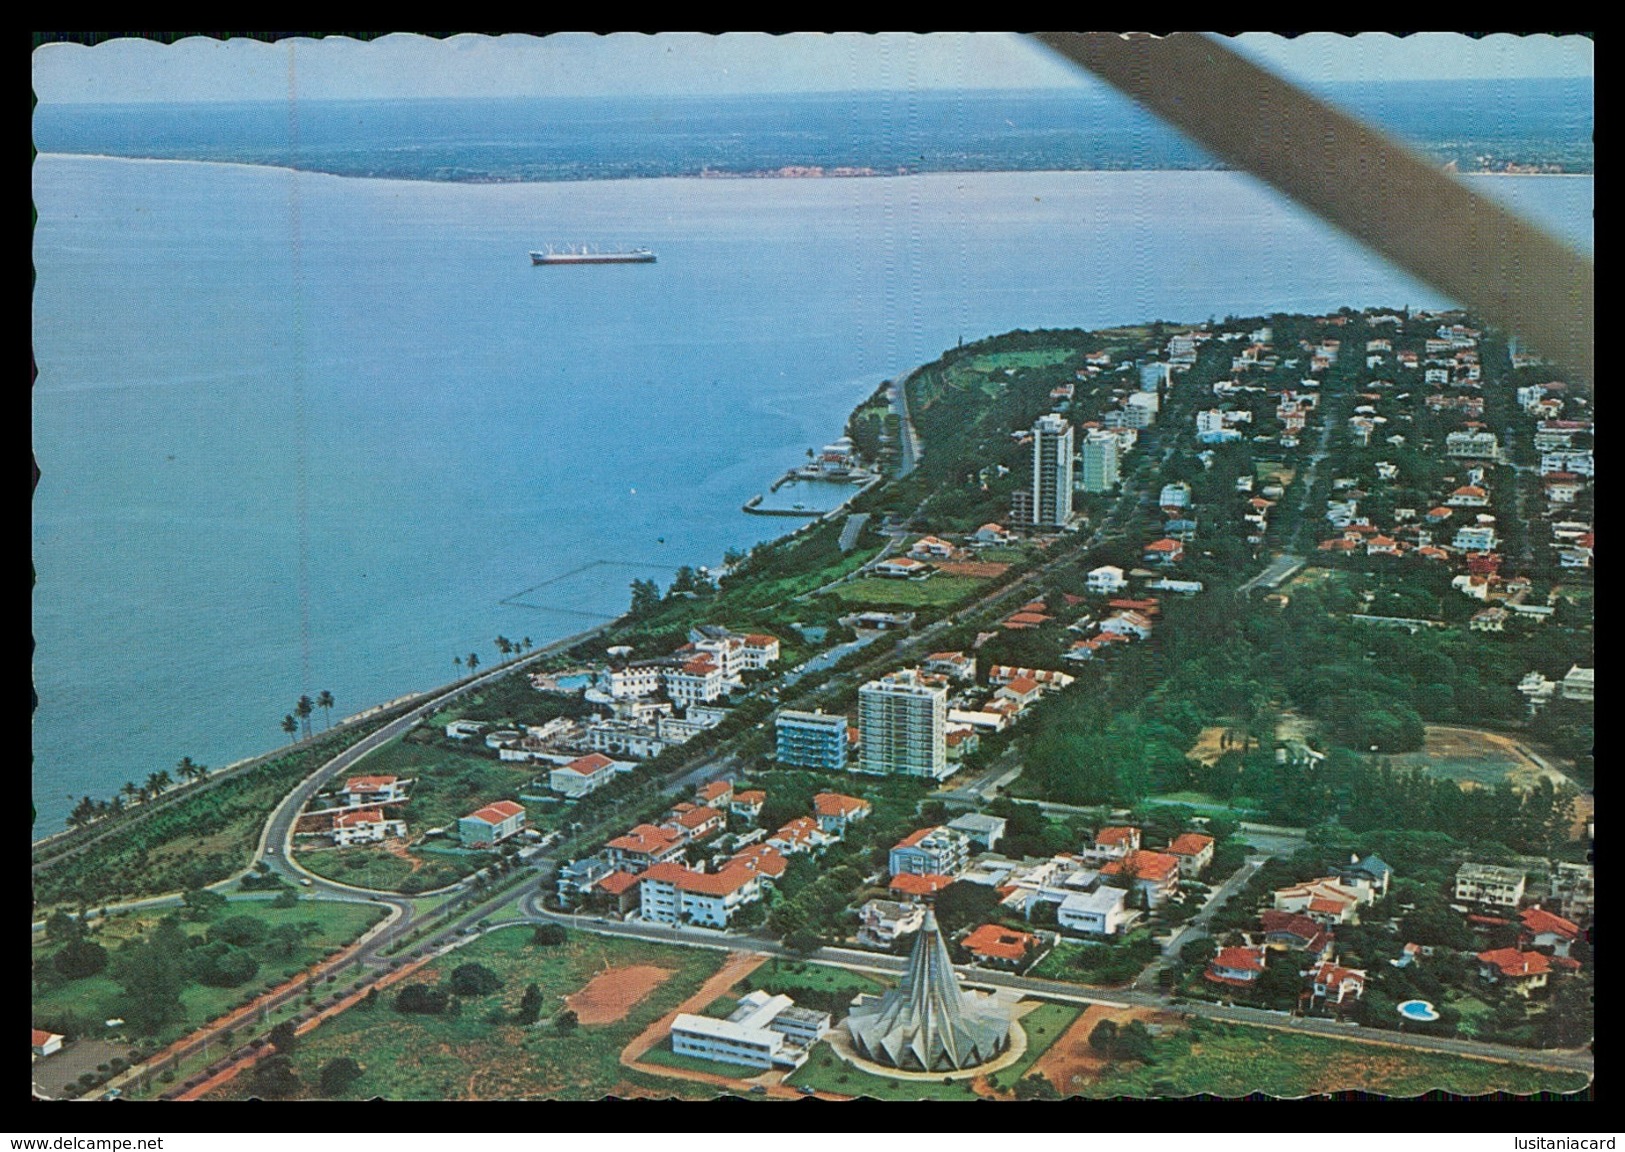 LOURENÇO MARQUES-Vista Aérea Da Cidade Onde Africa E Europa Se Encontram (Ed.Focarte Nº 6) Carte Postale - Mozambique